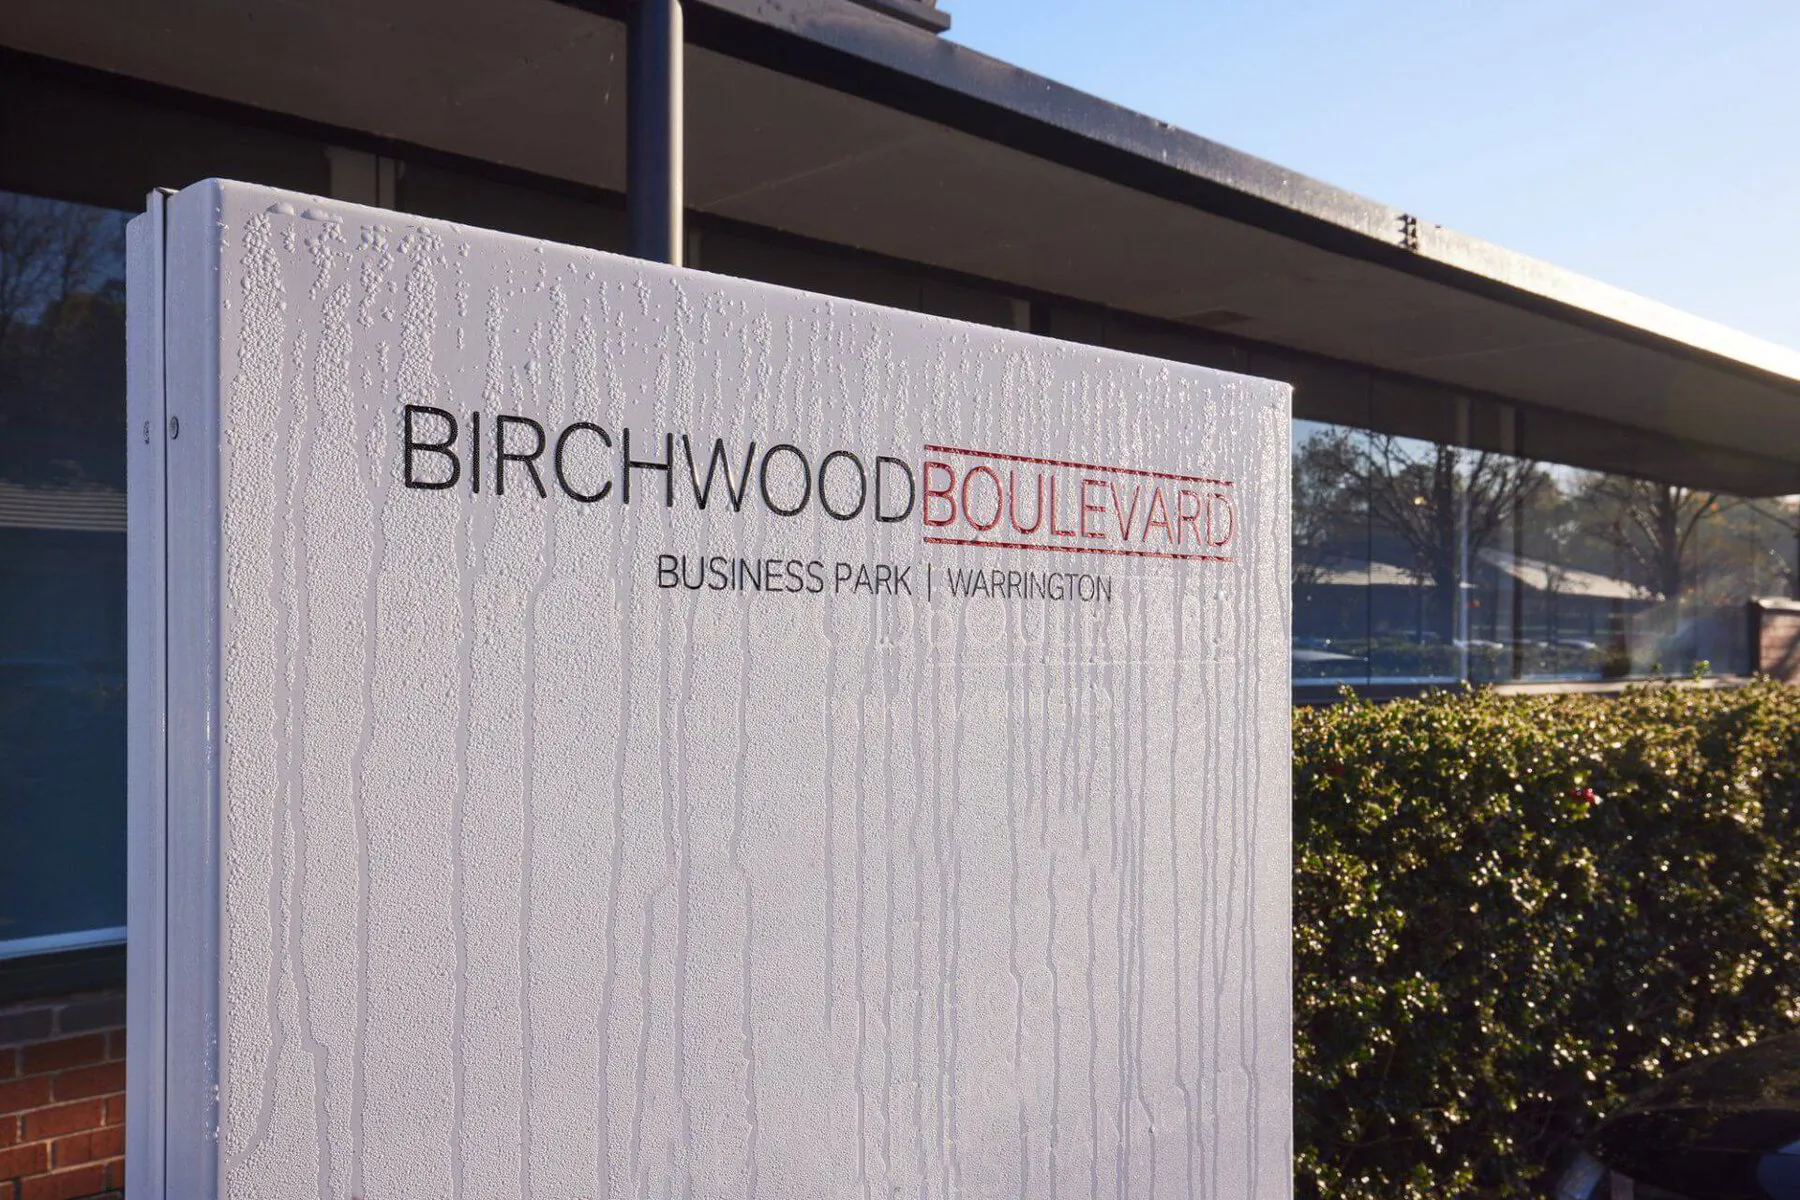 Birchwood Boulevard